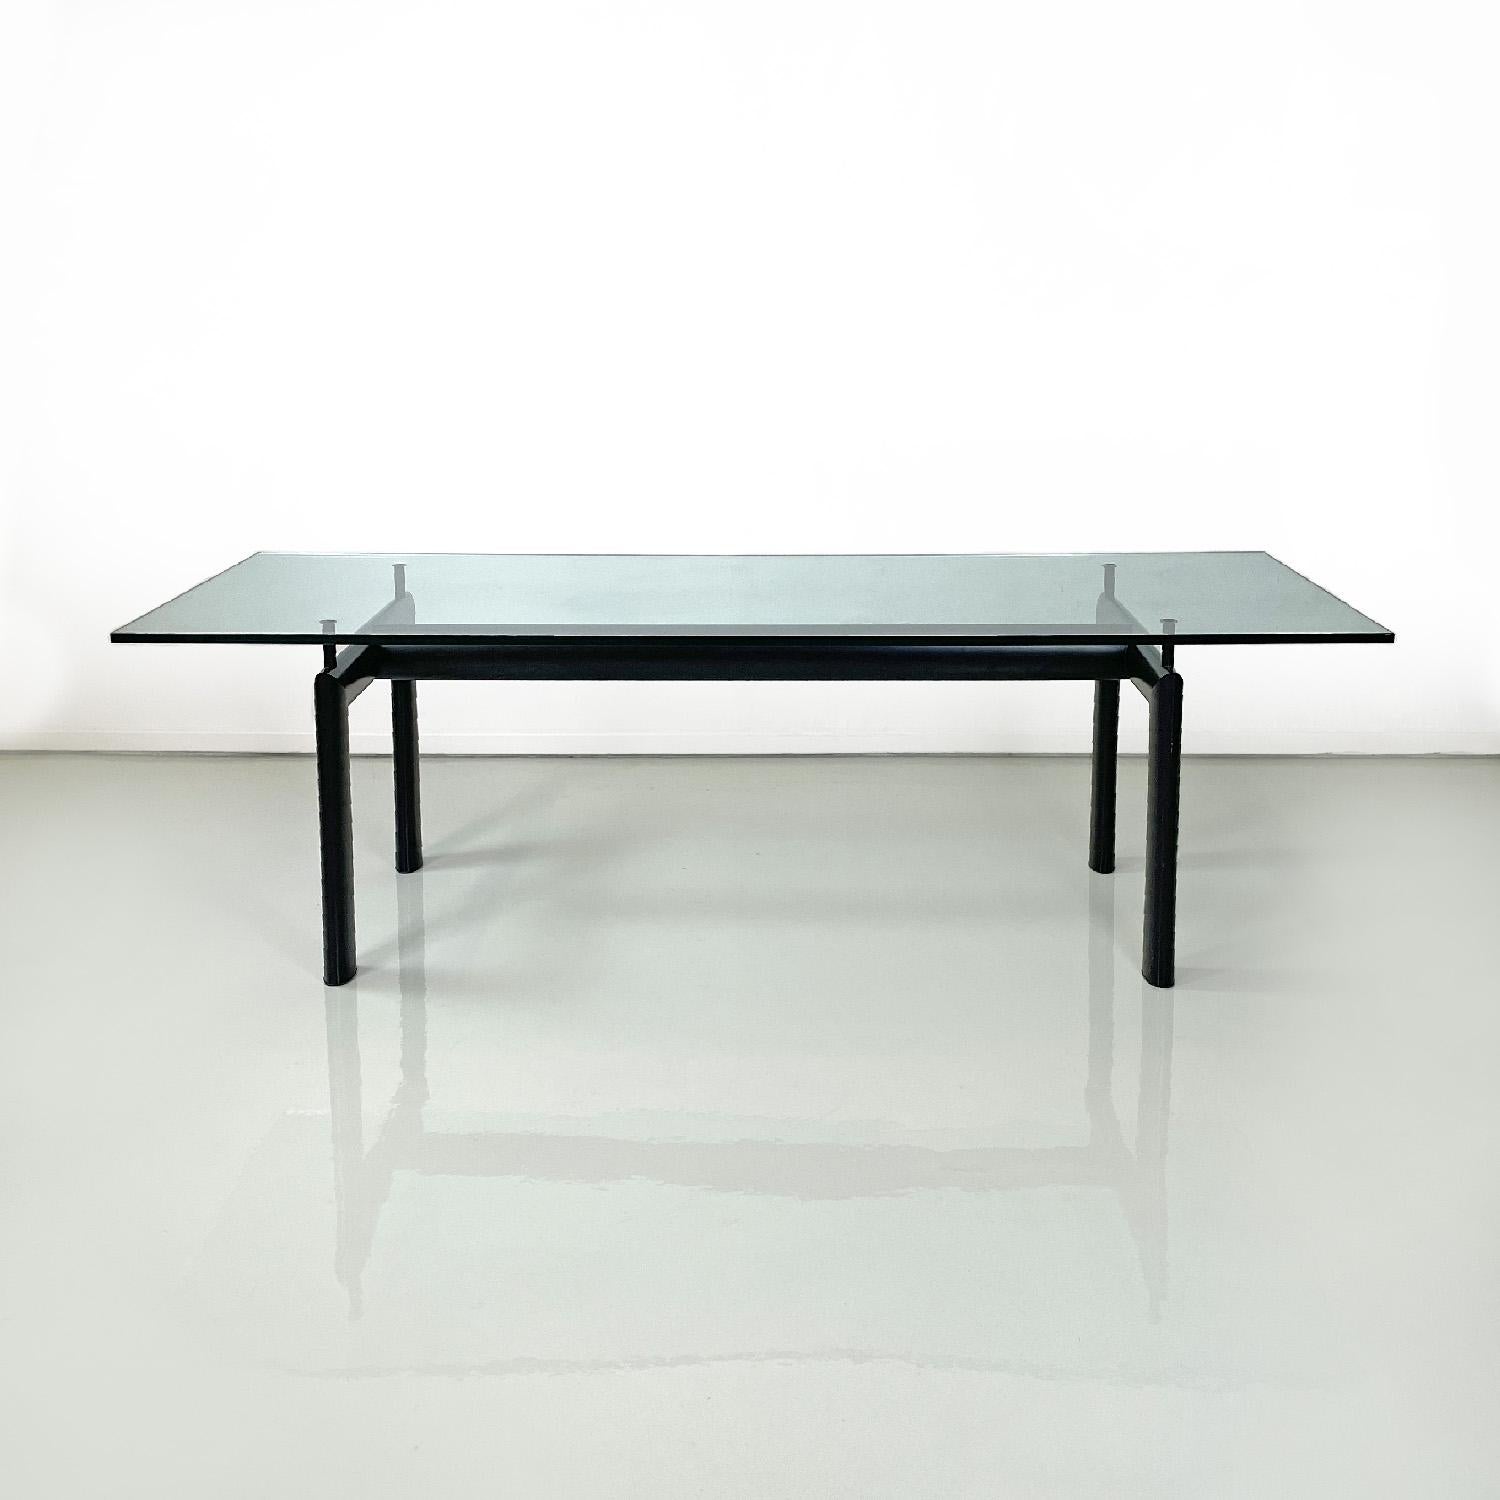 Italienischer Tisch LC6 von Le Corbusier, Jeanneret und Perriand für Cassina, 1980er Jahre
LC6 Esstisch in rechteckiger Form mit Glasplatte und ovalem Gestell aus schwarz lackiertem Stahl. Die Glasplatte hat abgeschrägte Ecken.
Hergestellt von